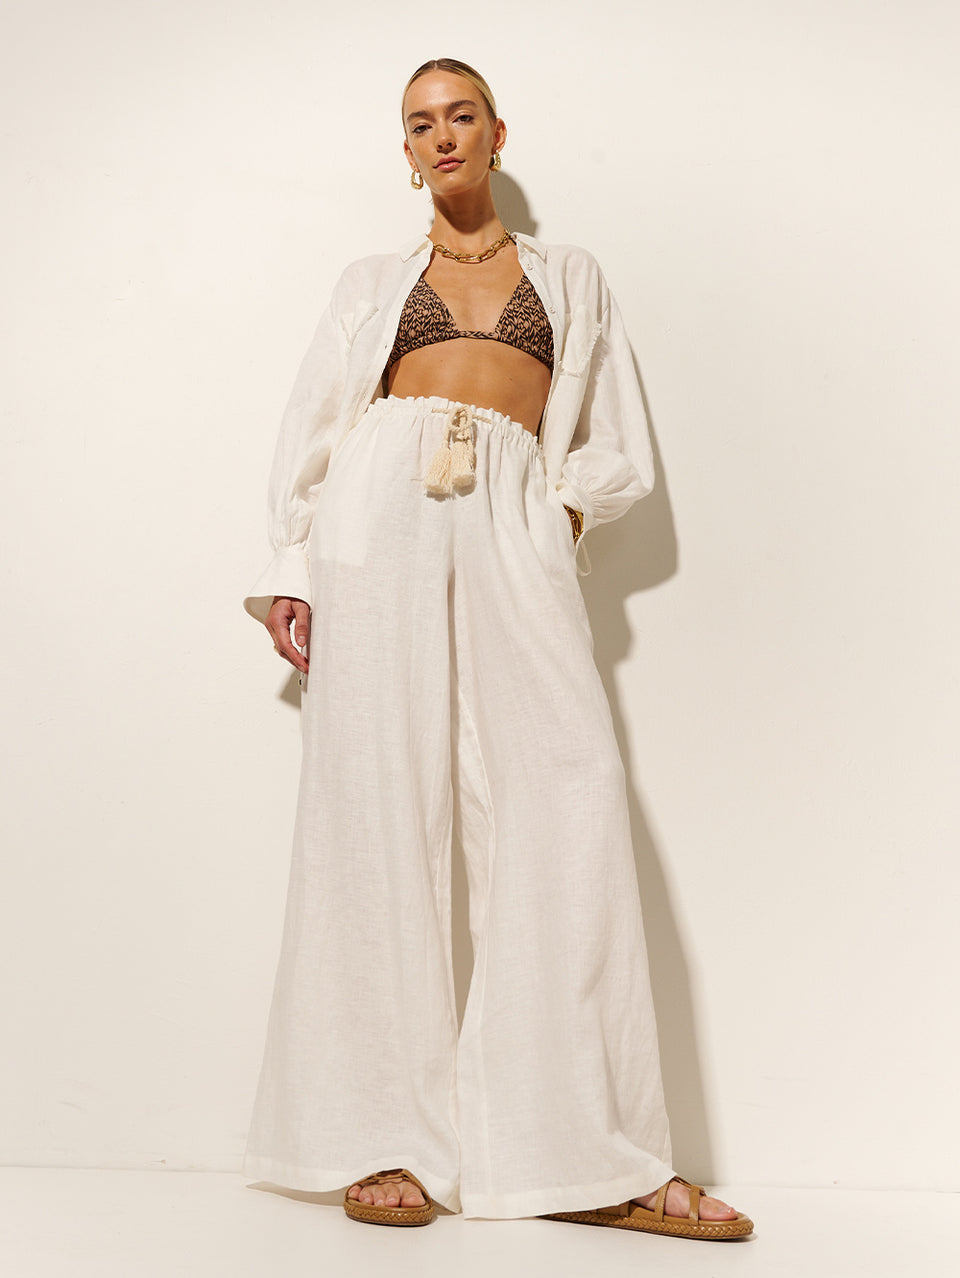 Jacana Pant KIVARI | Model wears ivory linen pant